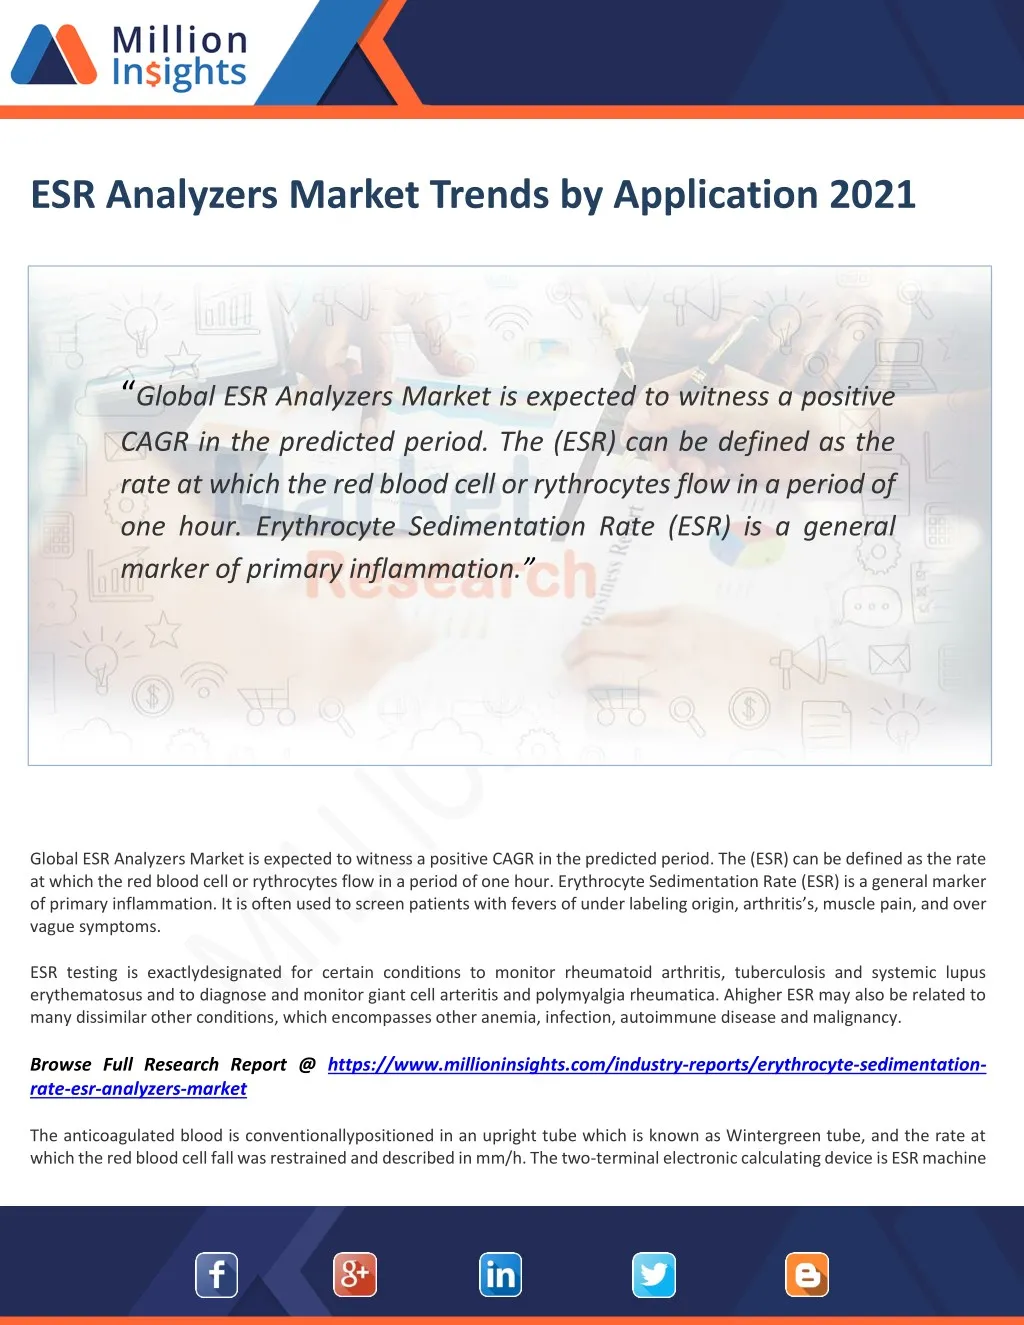 esr analyzers market trends by application 2021